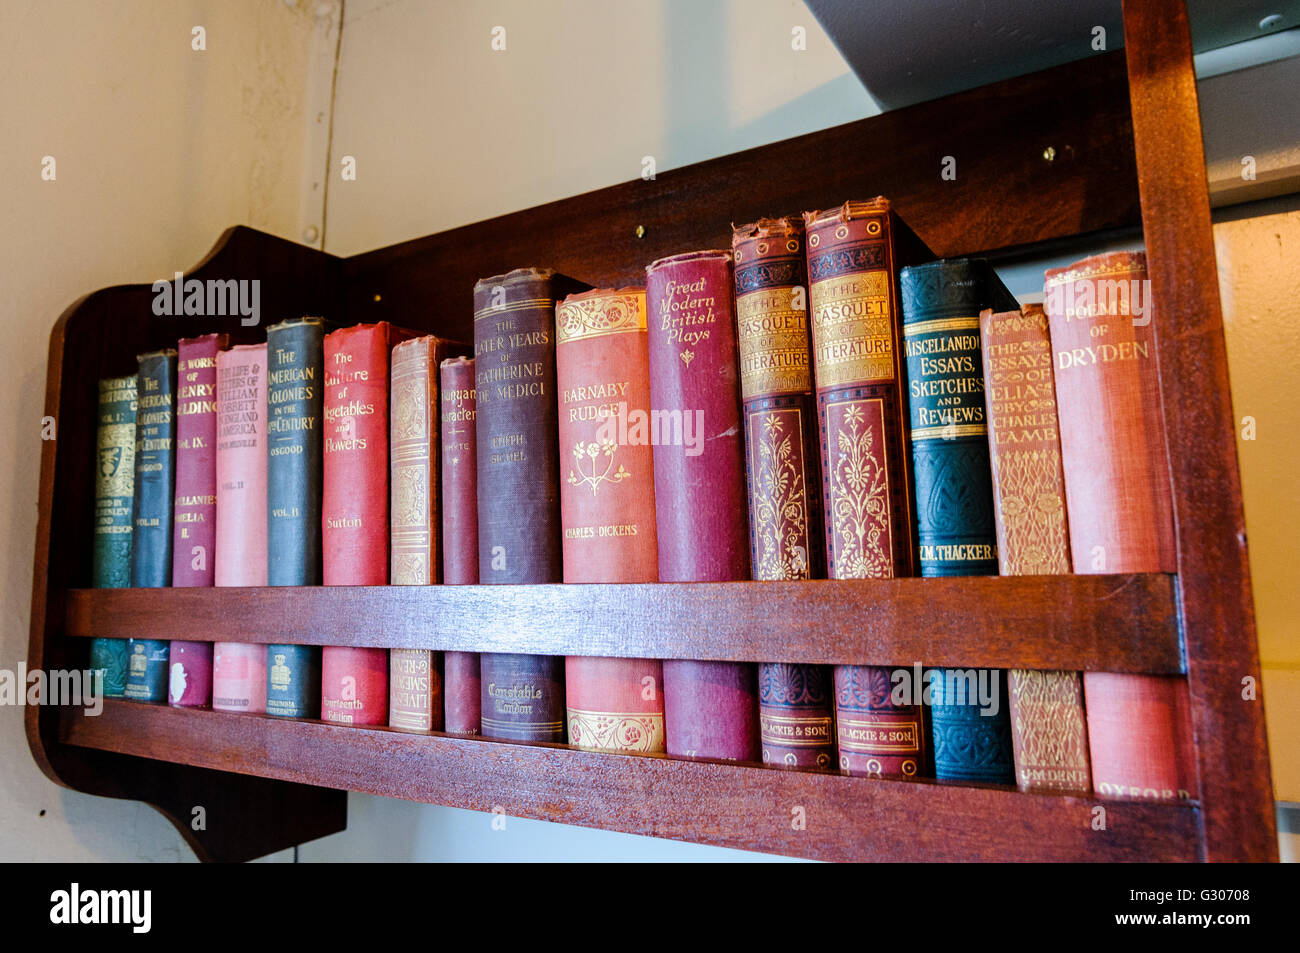 Petite bibliothèque avec livres anciens de autour de 1900-1915, y compris la littérature anglaise classiques tels que Dickens et Thacker. Banque D'Images